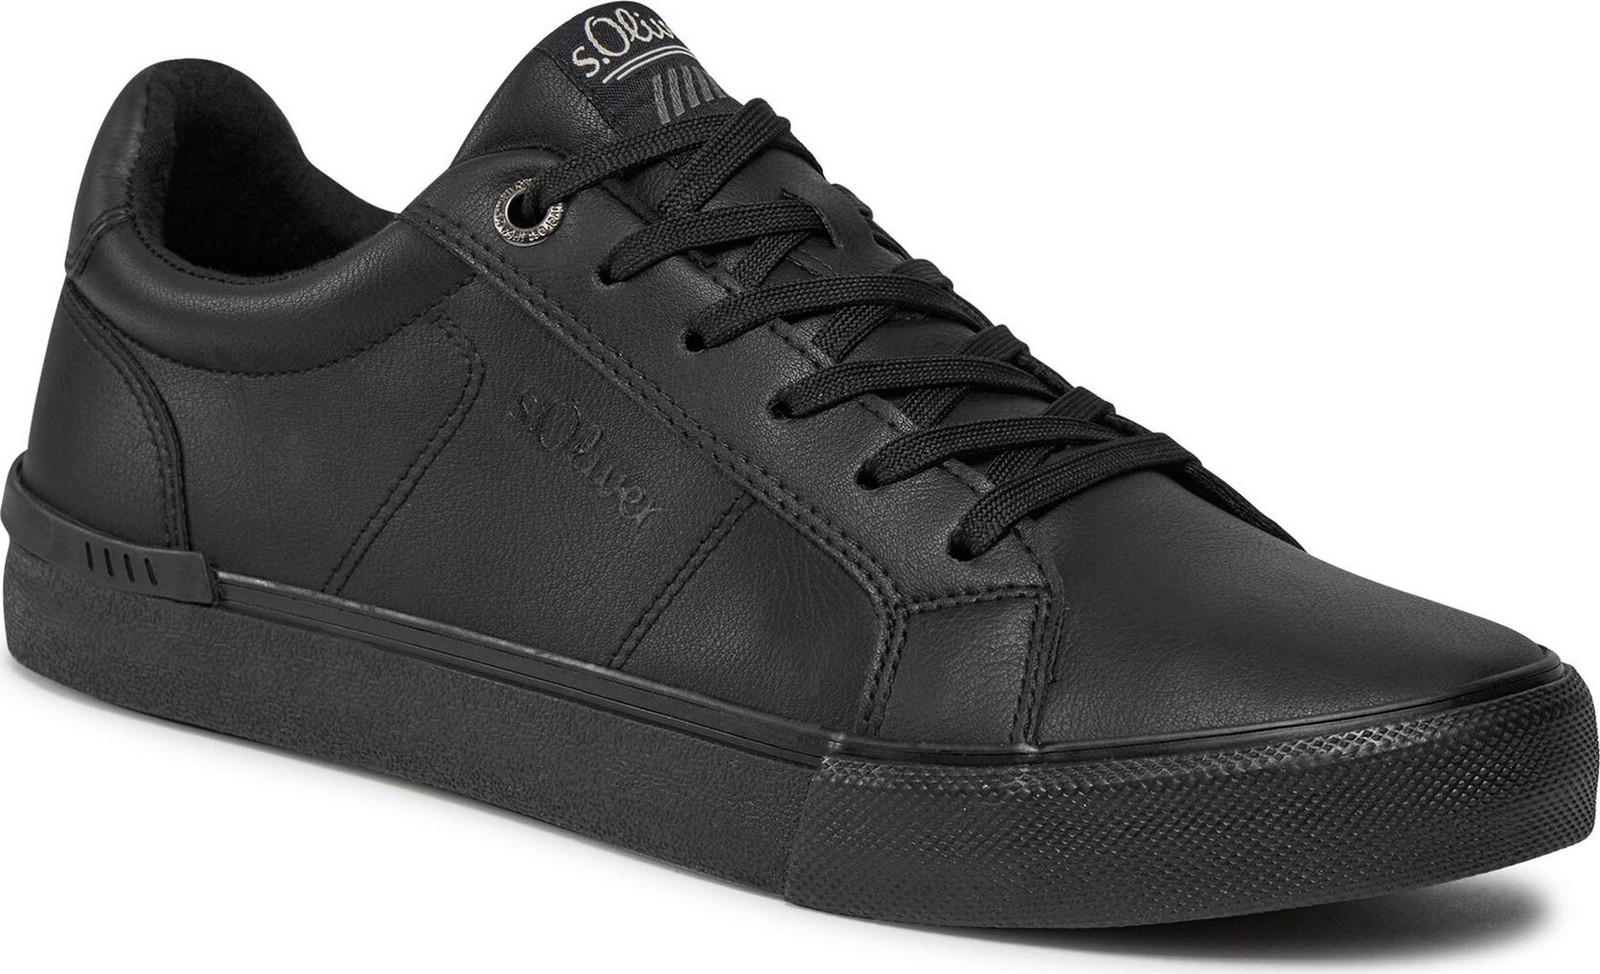 Sneakersy s.Oliver 5-13630-41 Černá